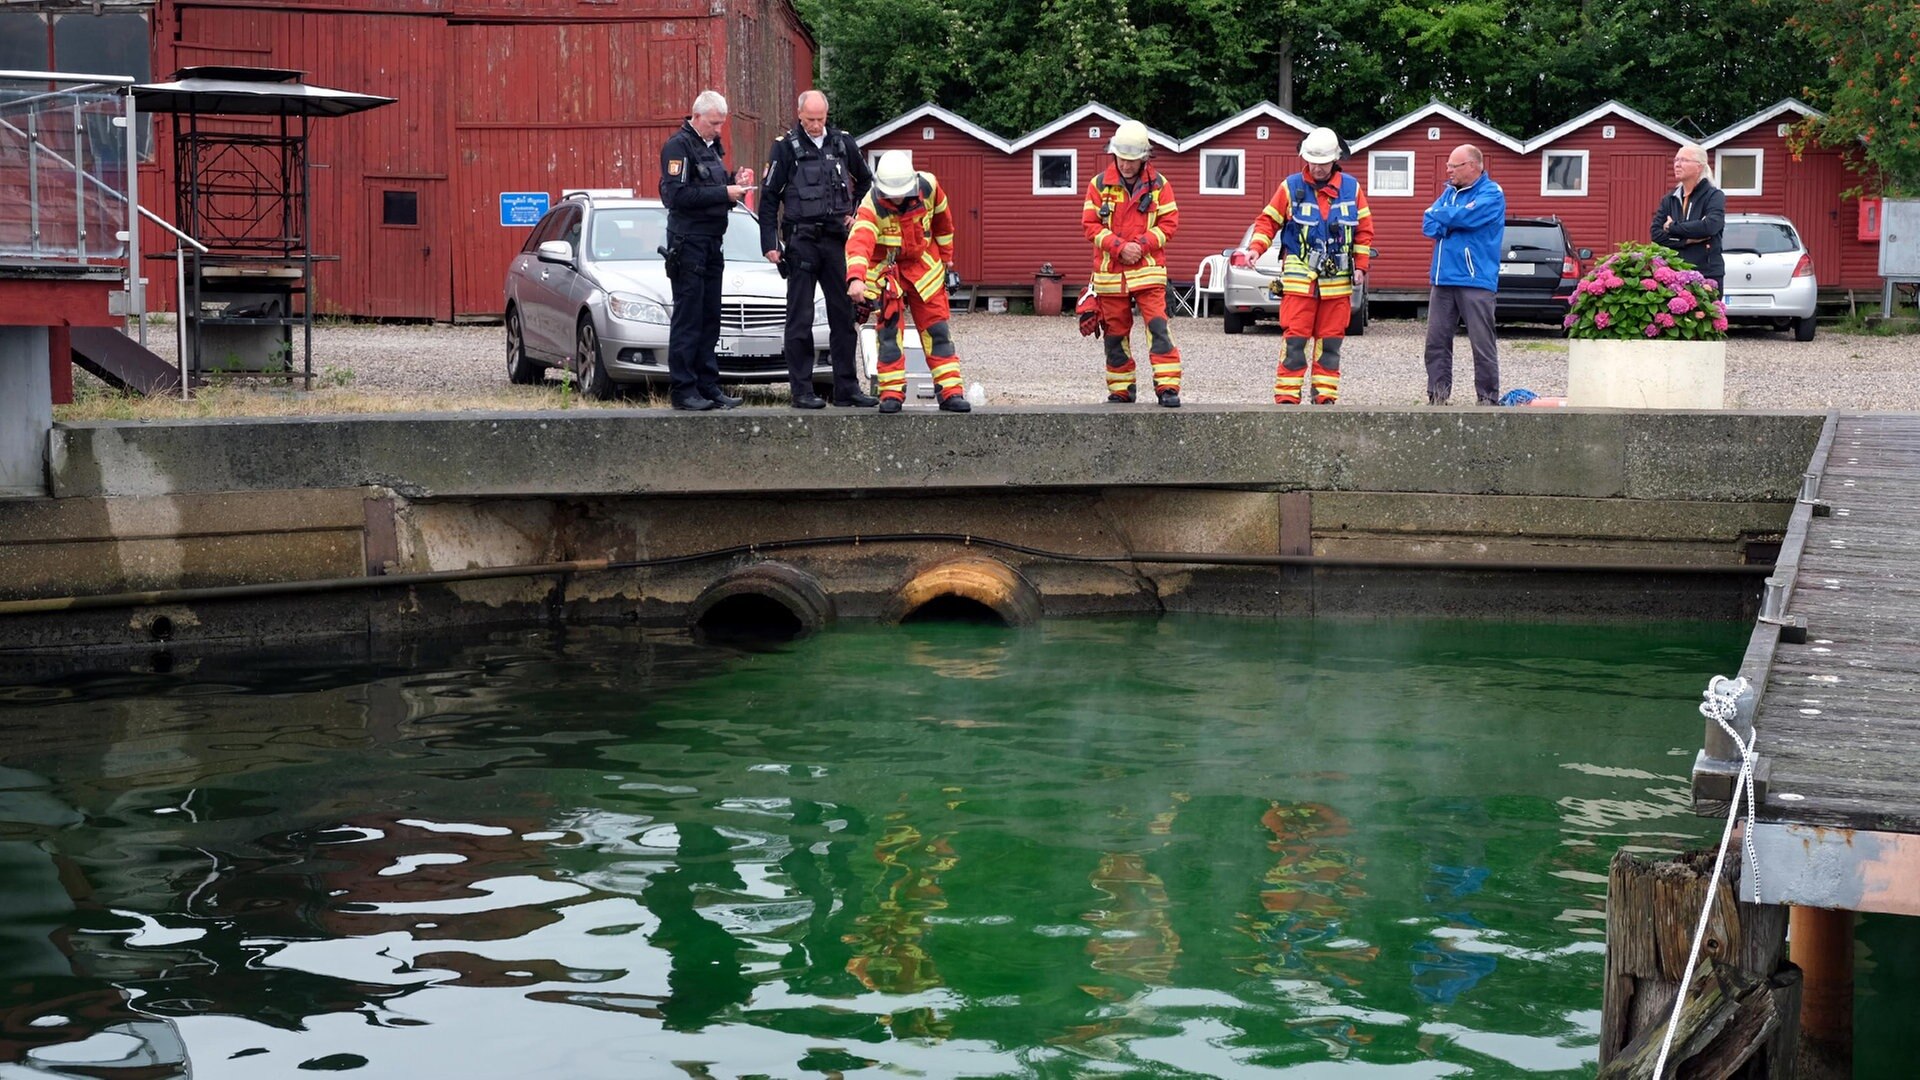 Grünes Wasser gelangte durch Bedienfehler in Flensburger Hafen